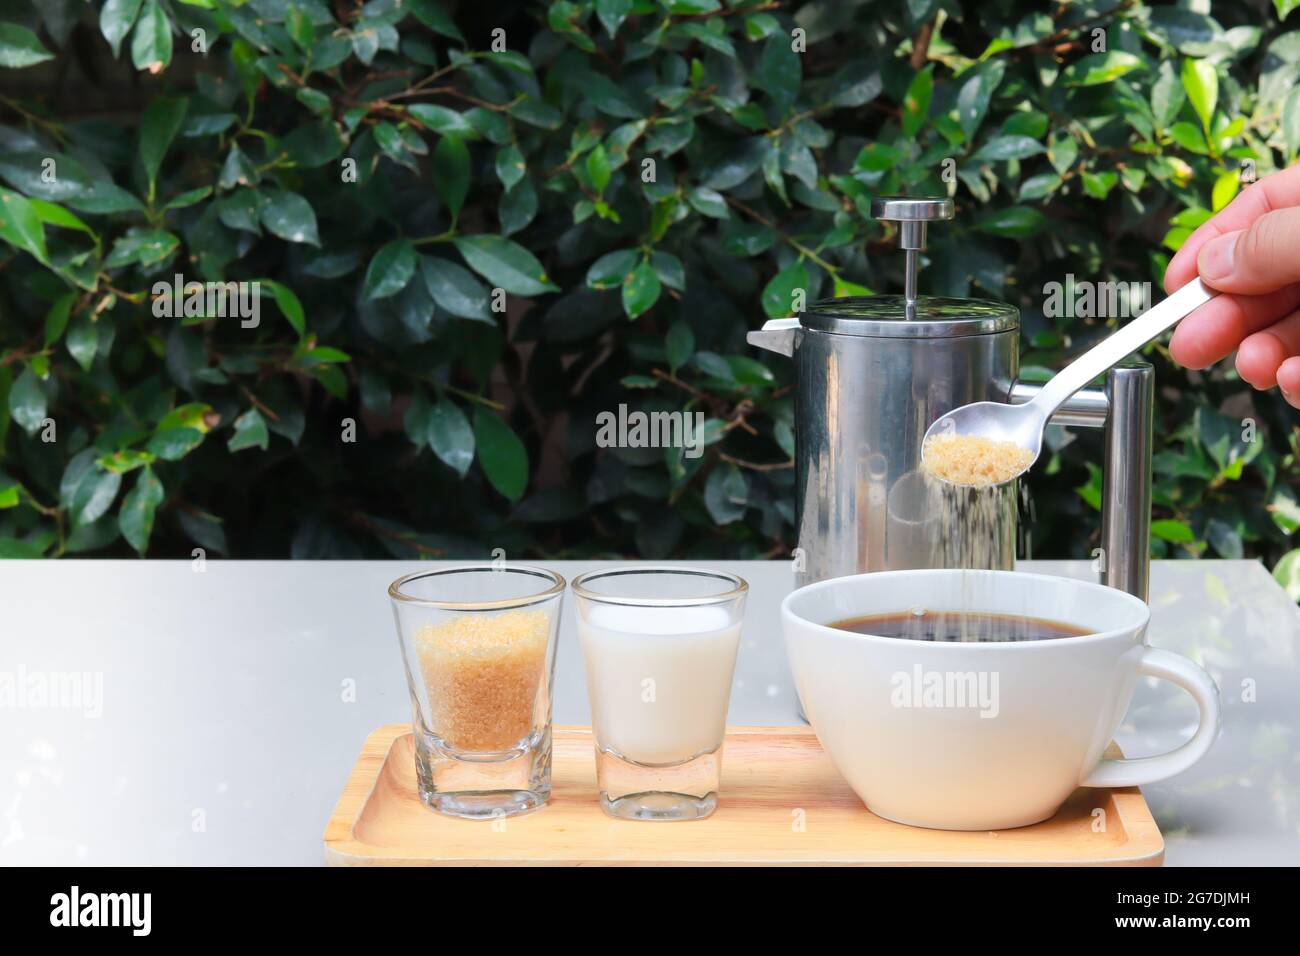 Aggiungere zucchero nel caffè. La tazza di caffè è montata su un vassoio di legno e accanto sono presenti latte e zucchero. Tavolo nel giardino del ristorante con foglie verdi. Foto Stock